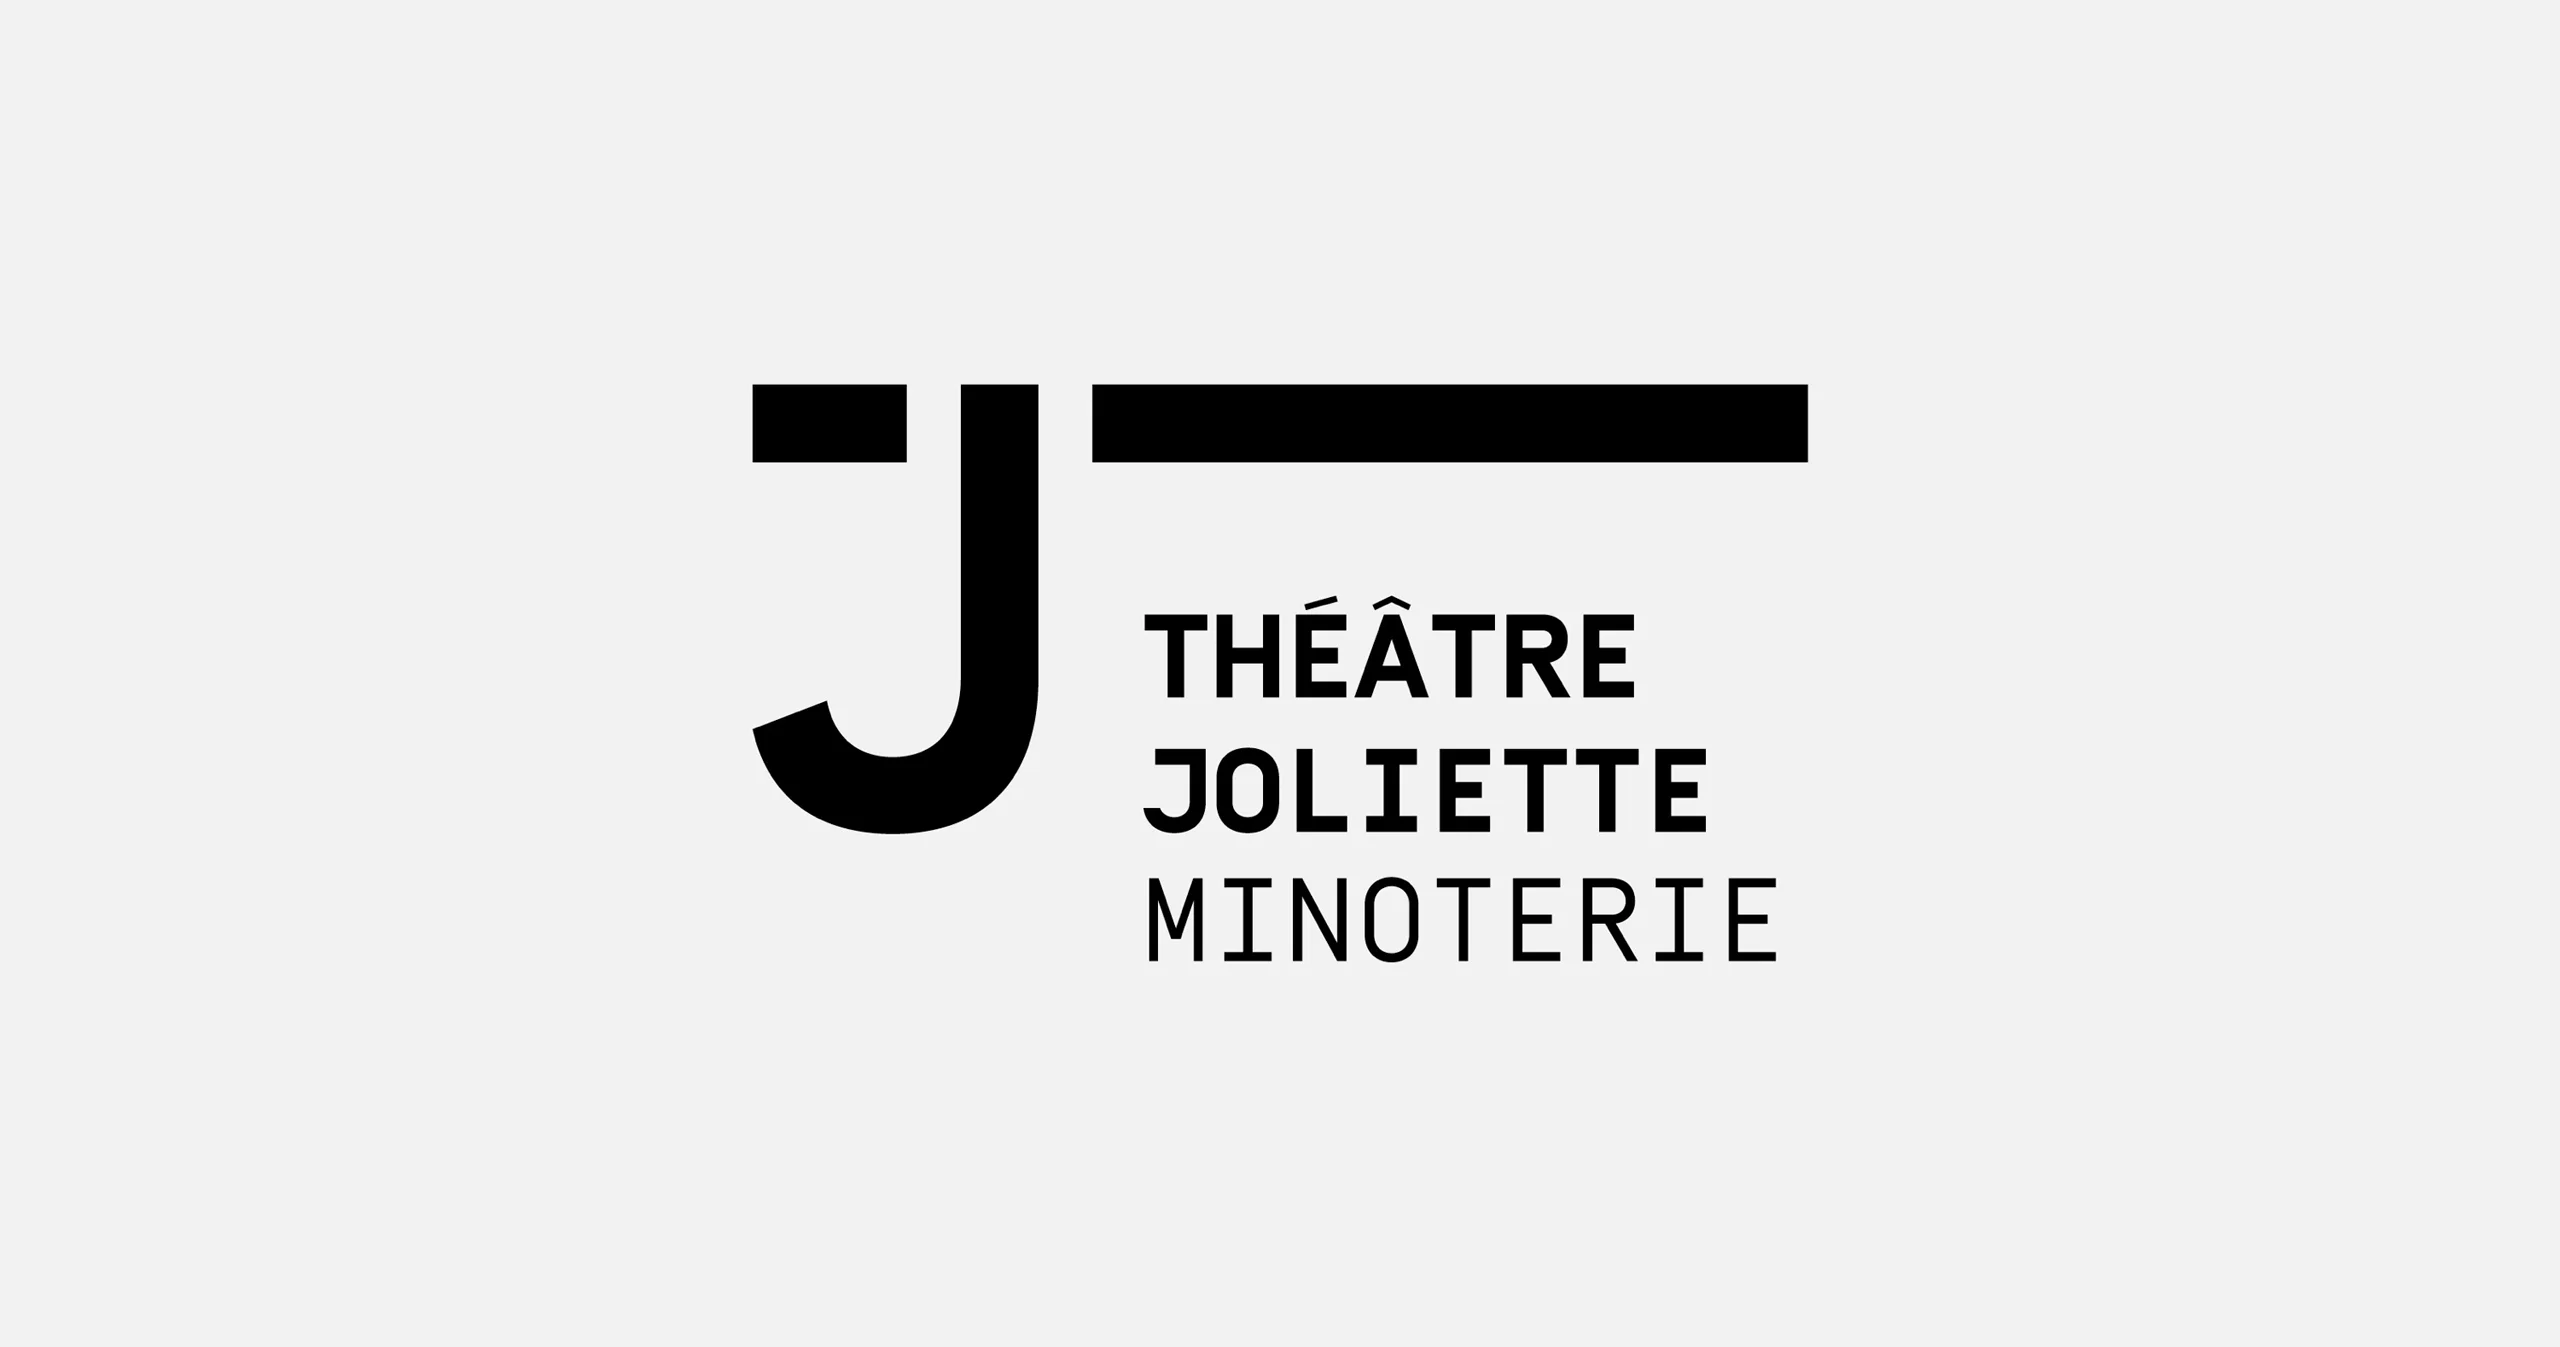 Logotype composé du nom "Théâtre Joliette Minoterie", chapeauté par la barre horizontale de la lettre J lui étant aposée et rappelant le bâtiment en porte à faux